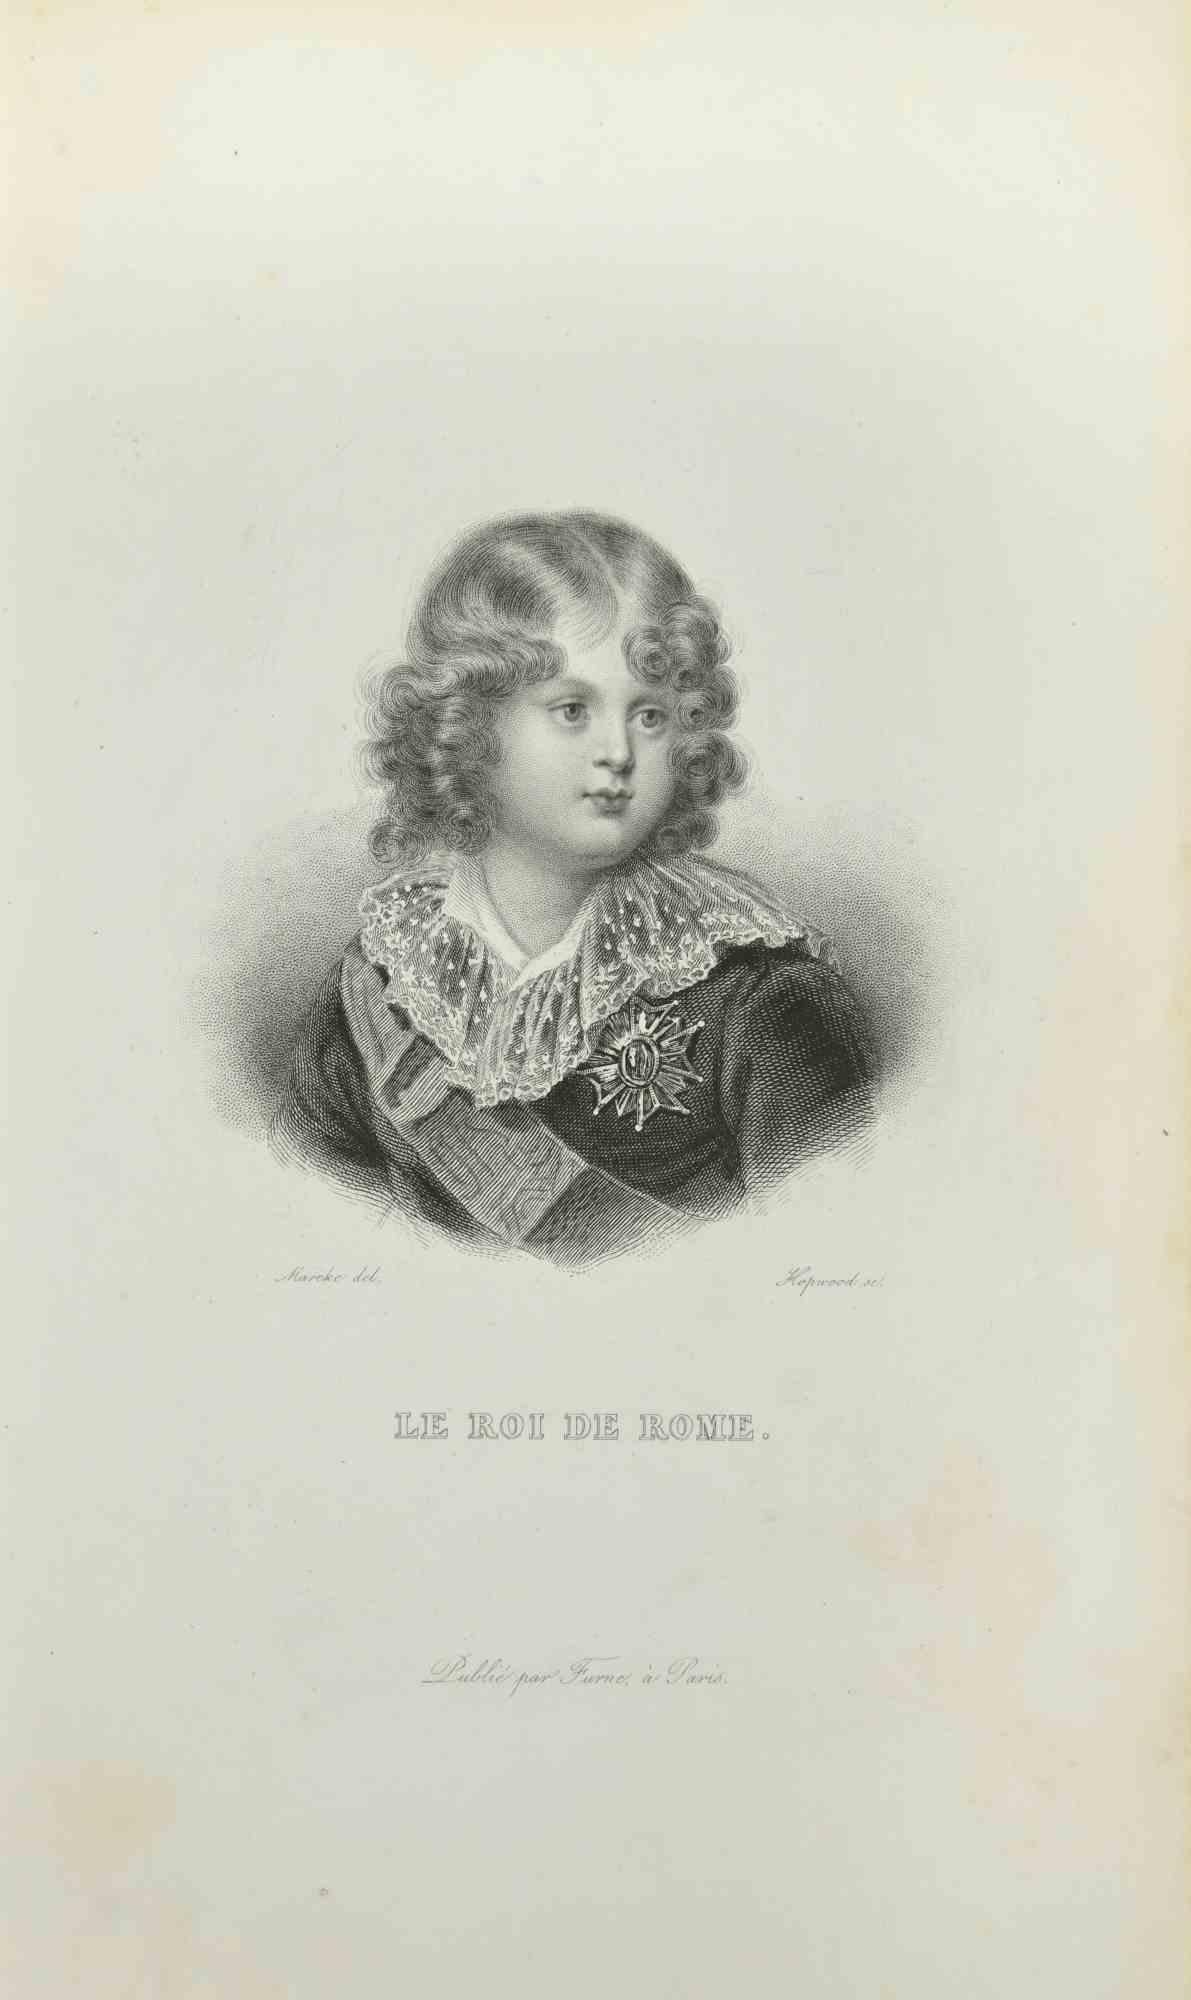 Unknown Portrait Print - Le Roi de Rome - Etching - 1837